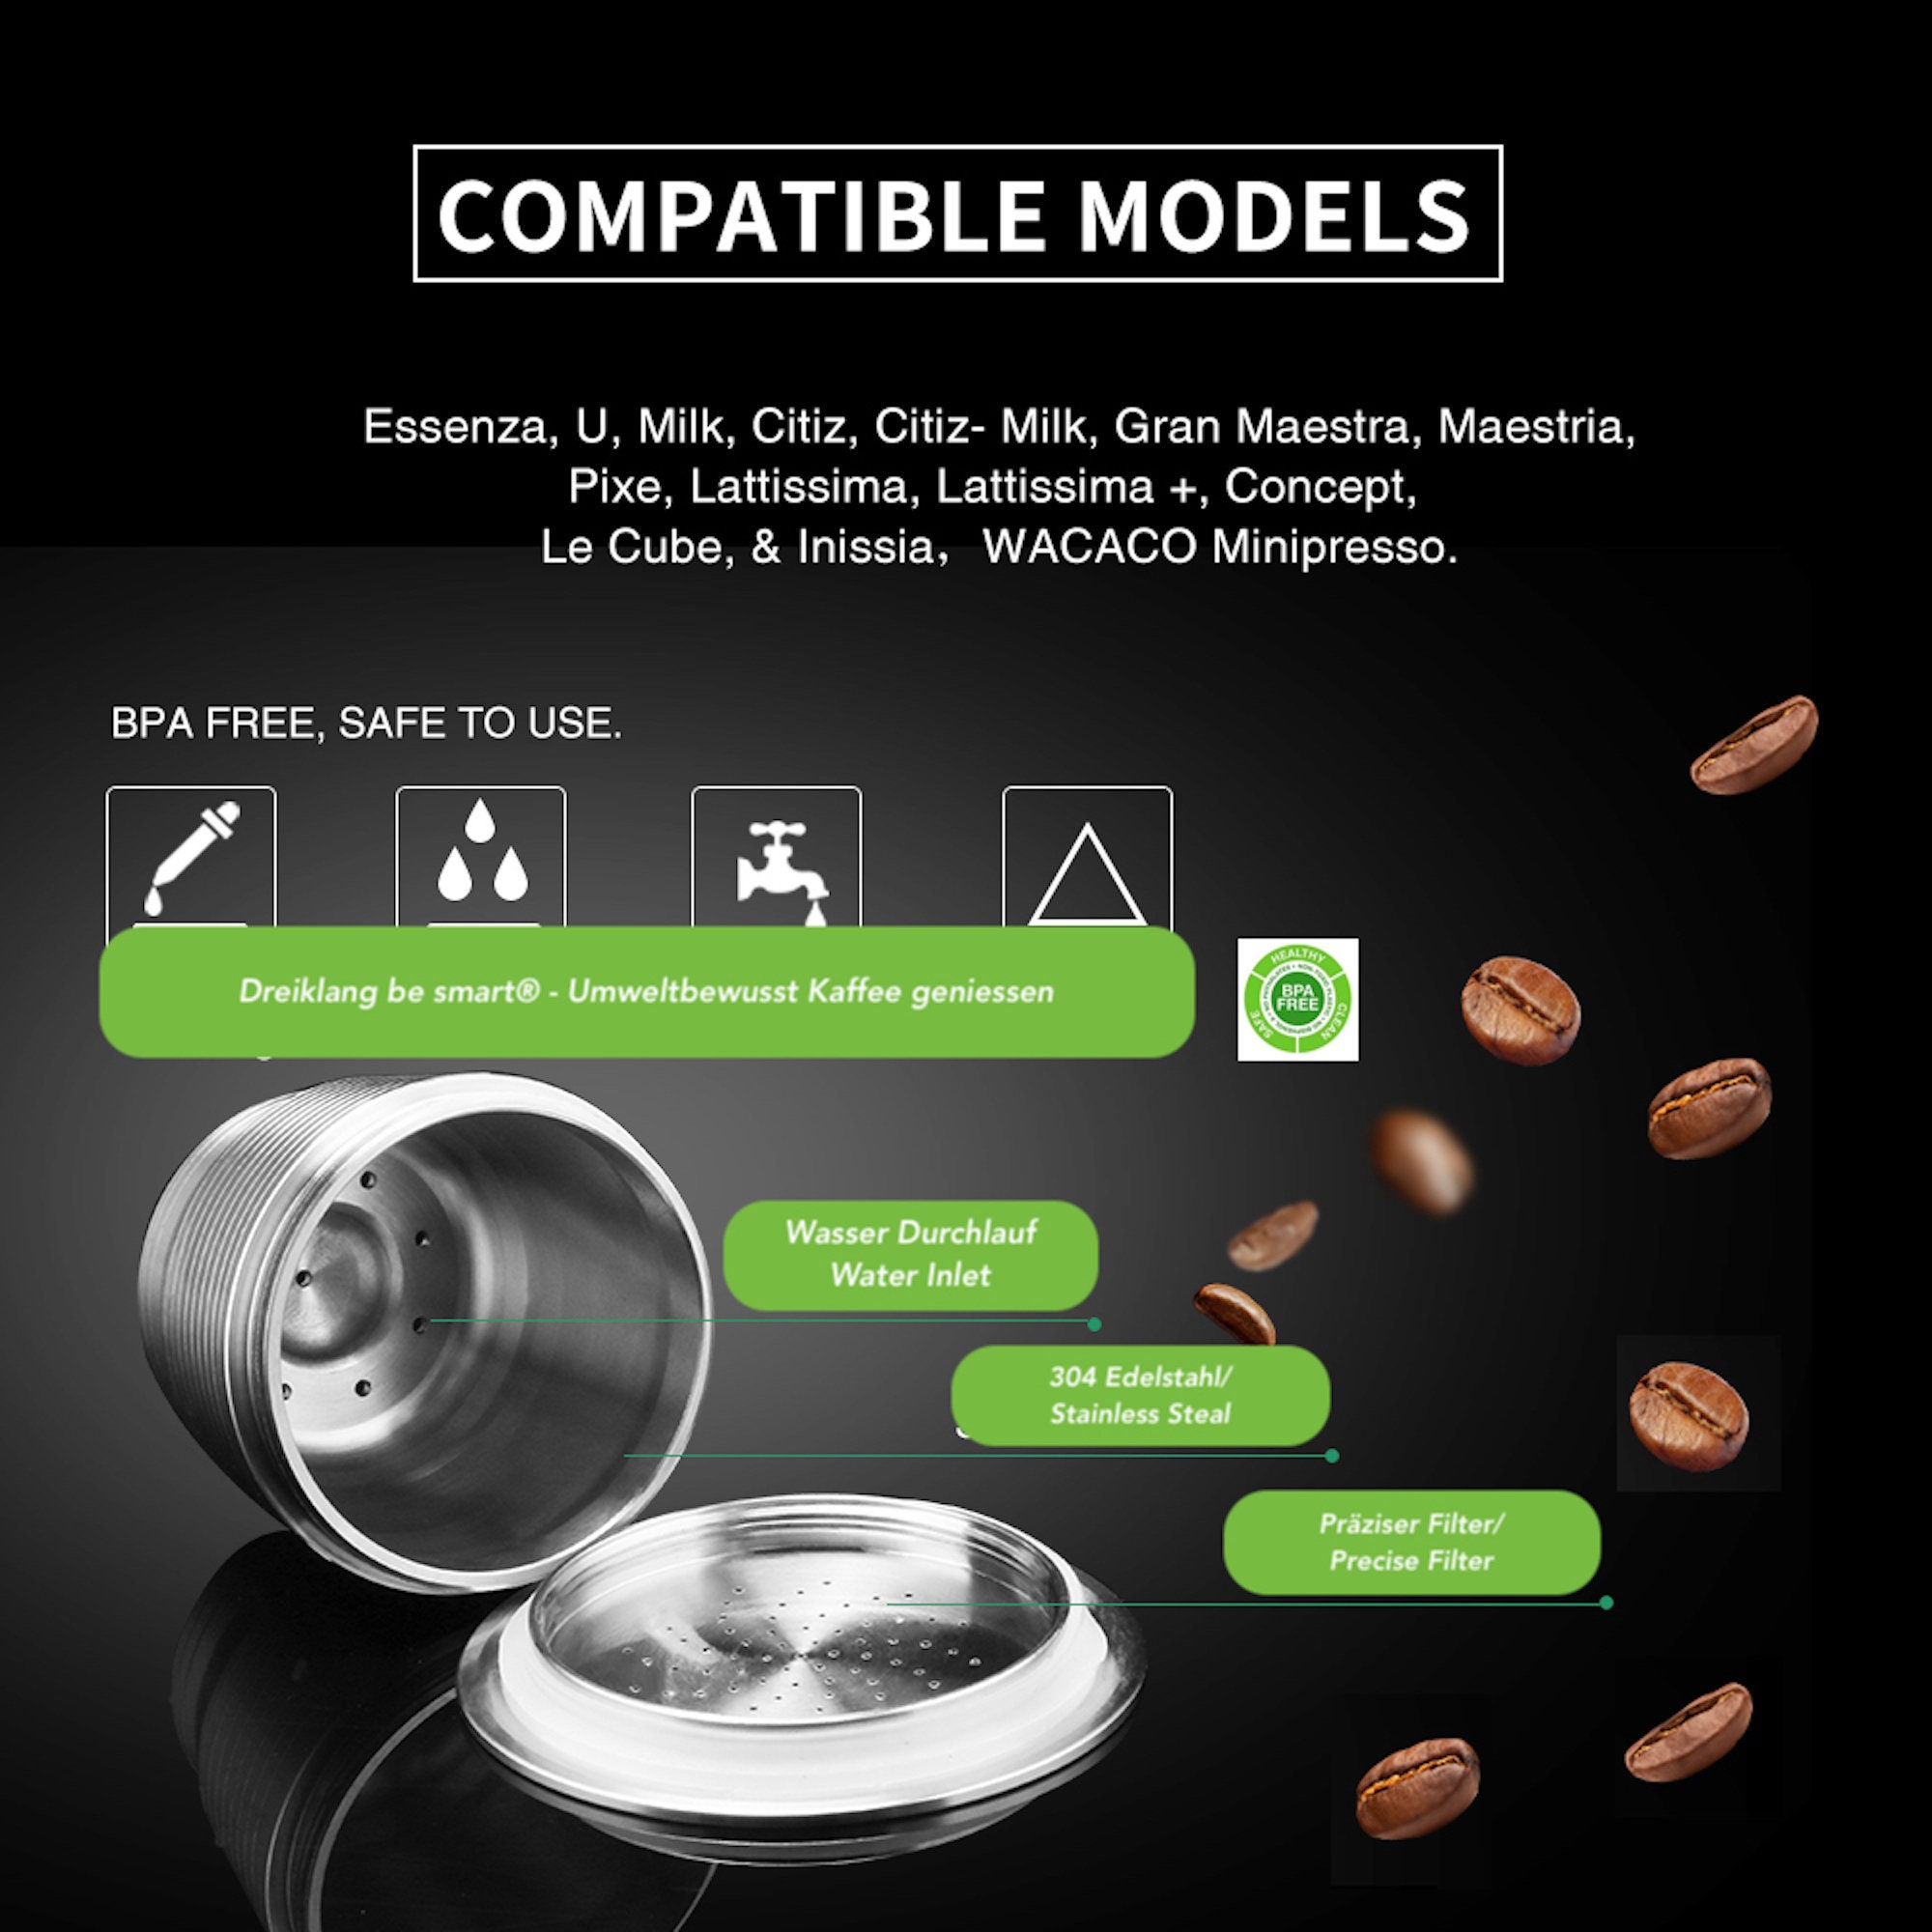 Porta capsule Nespresso Doppio magnetico - Plexy Design